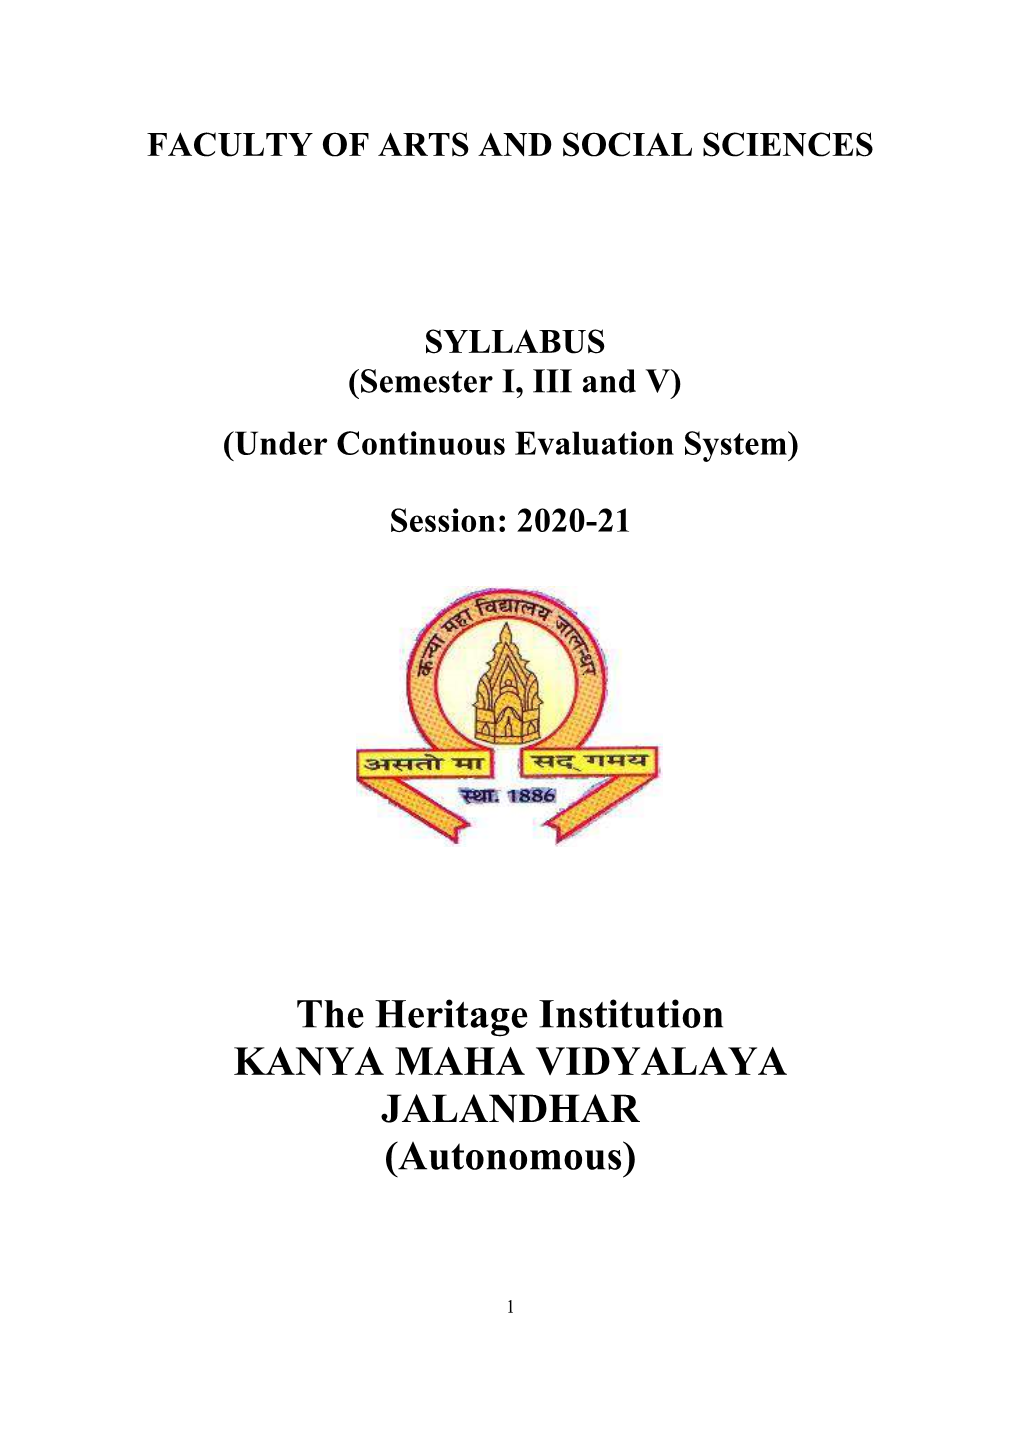 The Heritage Institution KANYA MAHA VIDYALAYA JALANDHAR (Autonomous)